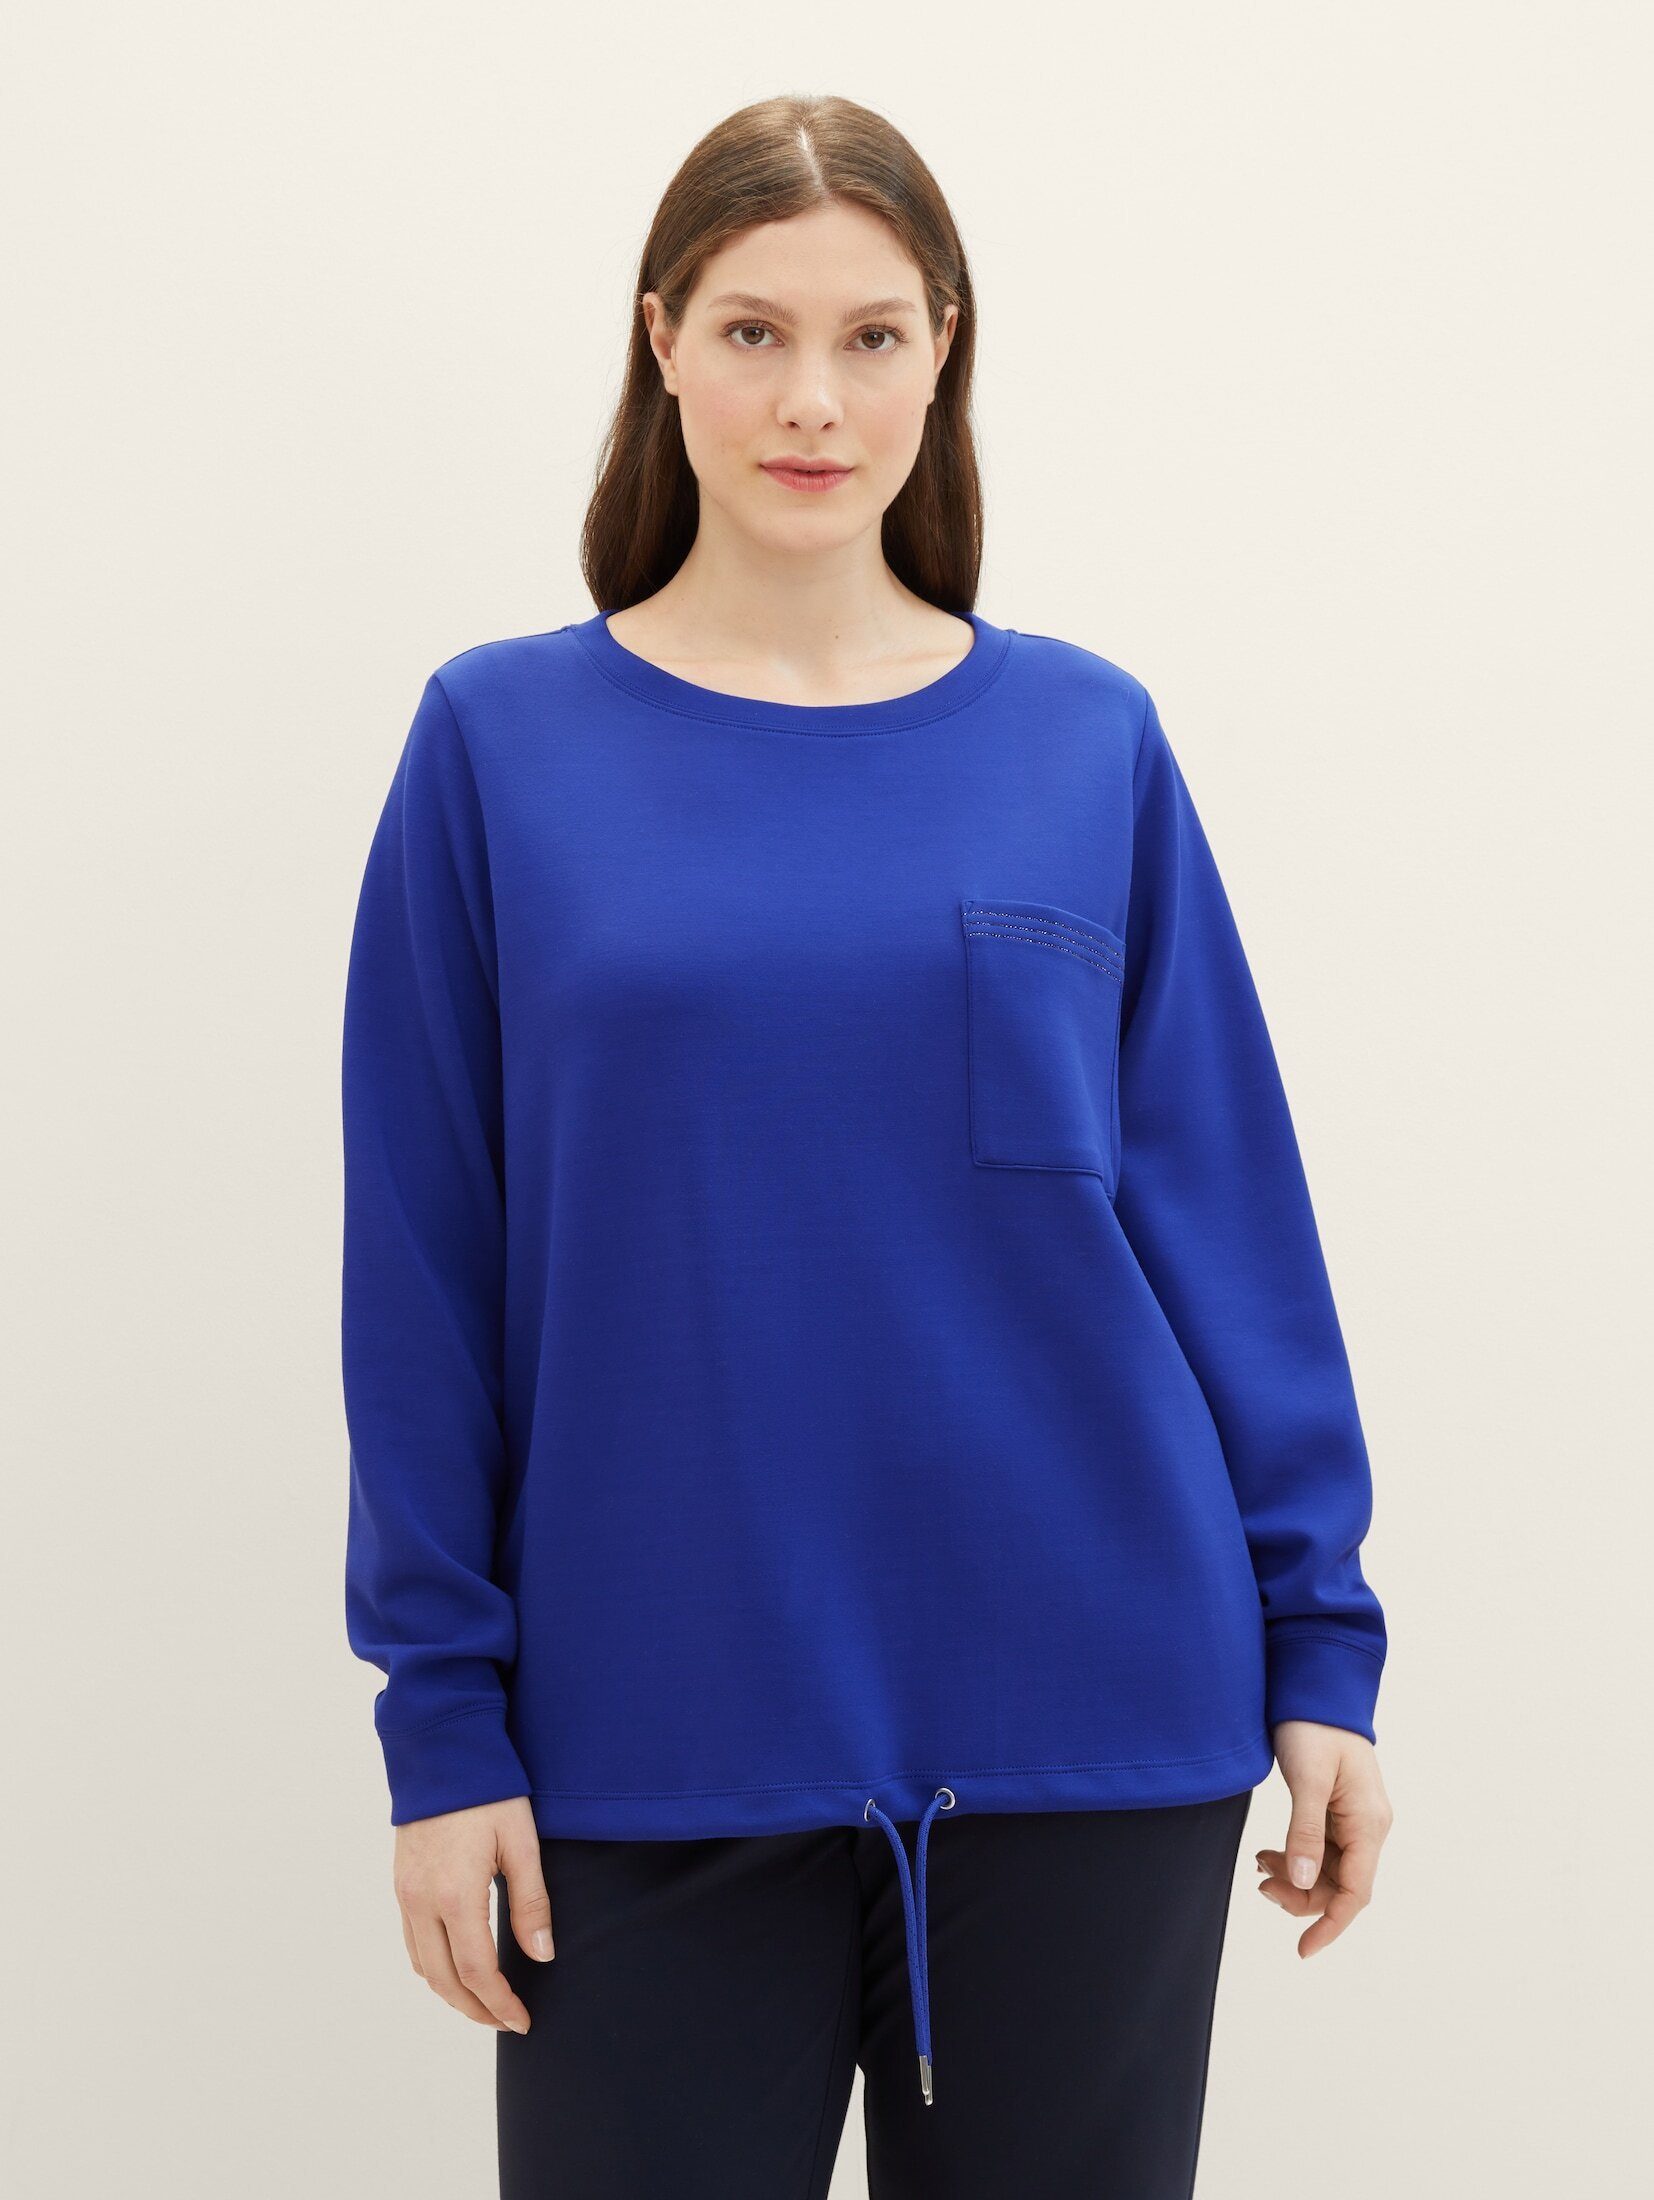 Sweatshirt - Brusttasche PLUS mit Sweatshirt TAILOR Plus crest blue TOM